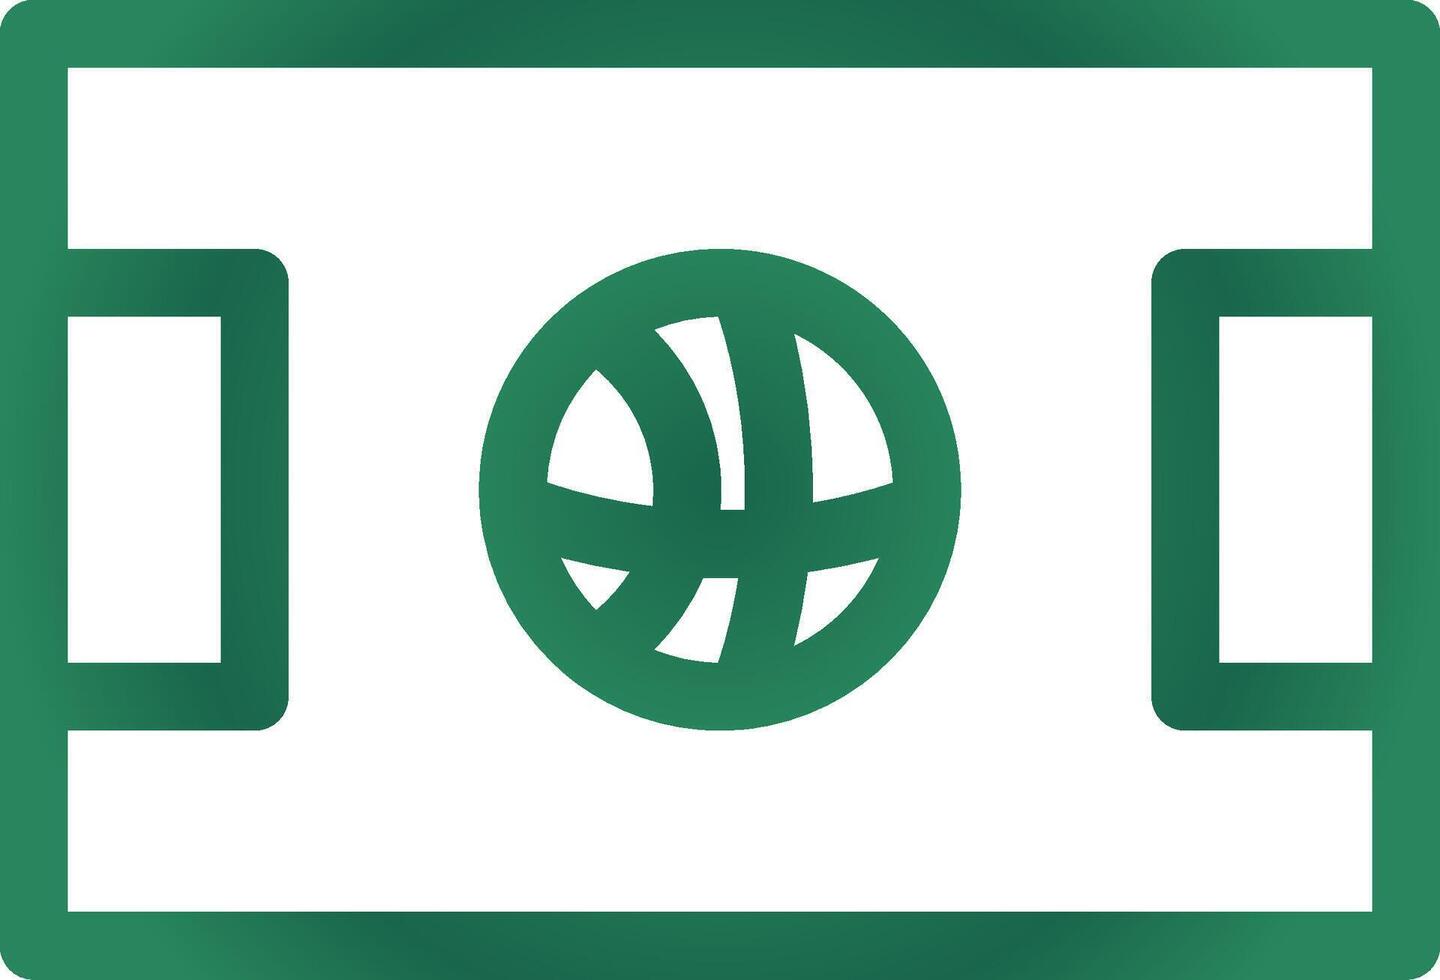 Basketball Court Creative Icon Design vector